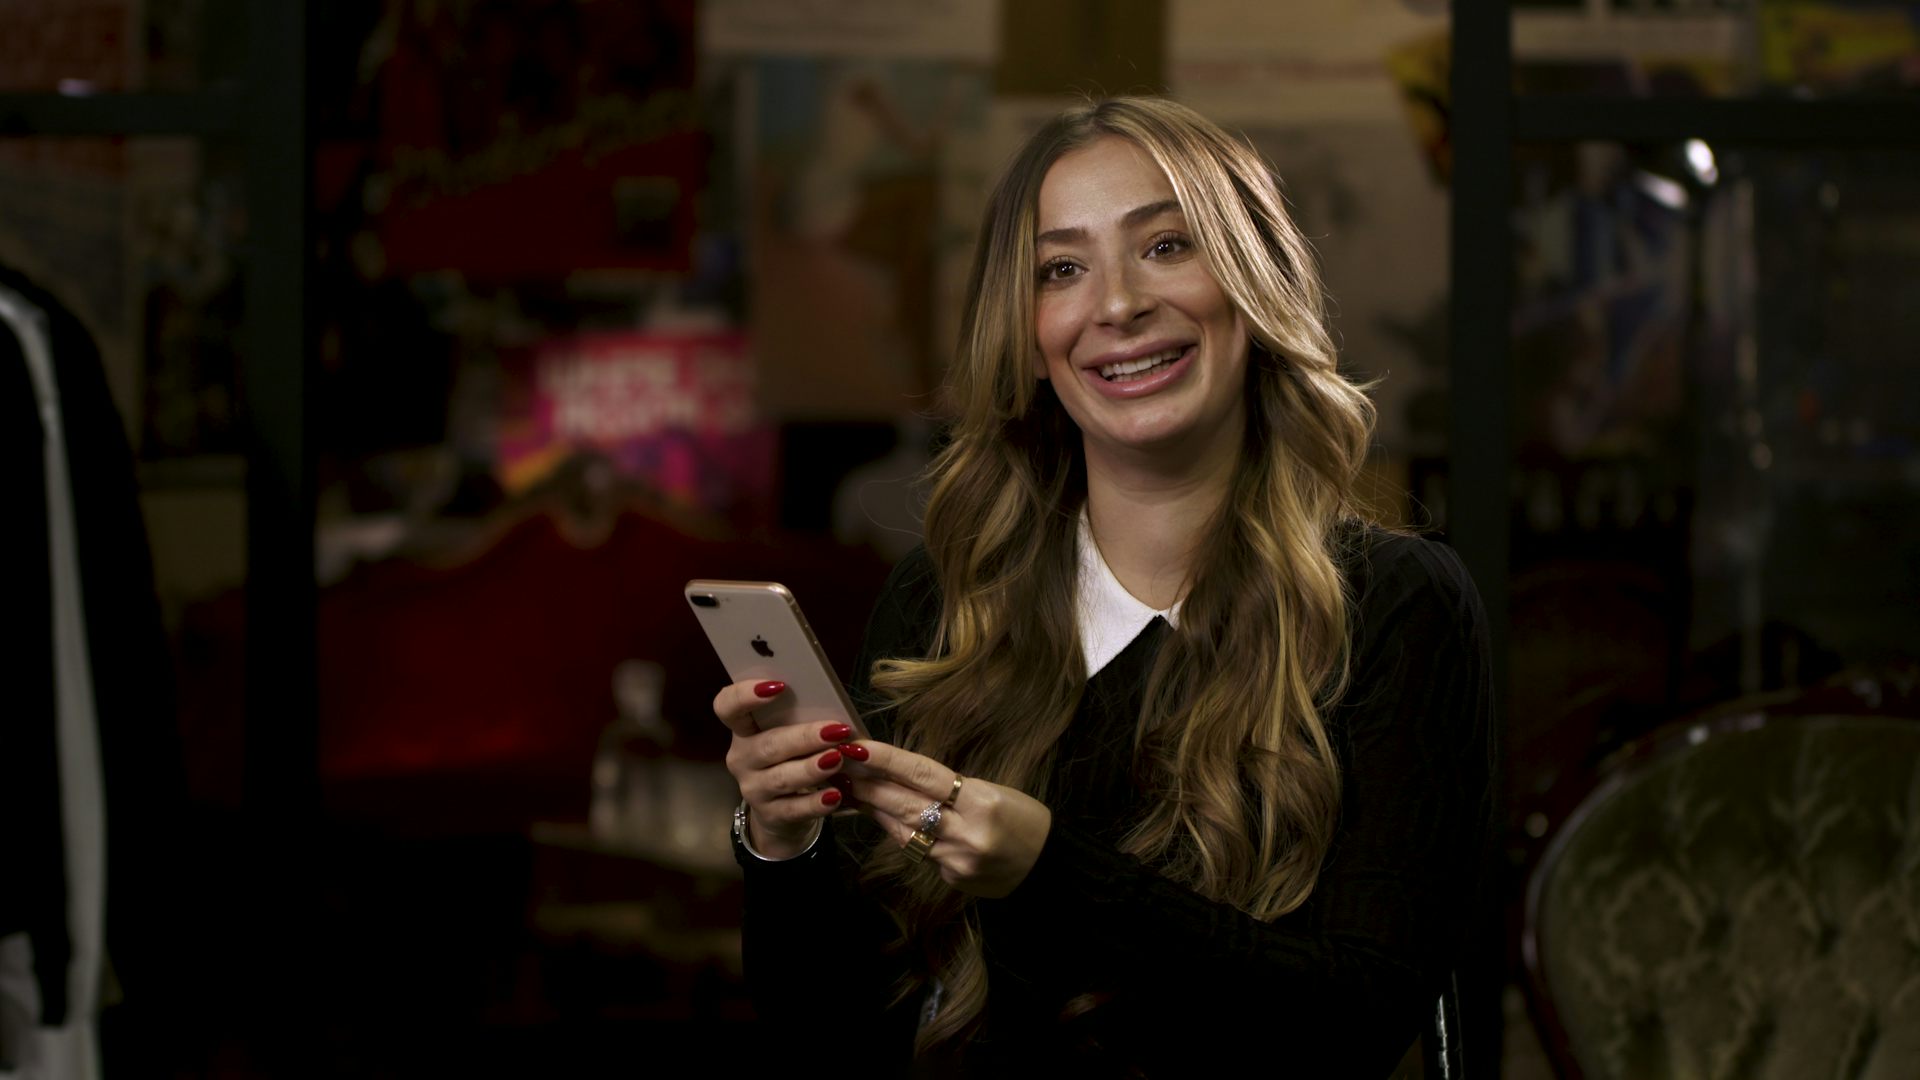 Kvinna i långt, lockigt, brunt hår iklädd svart pullover-tröja där en vit skjortkrage sticker ut håller i en smartphone. Hon tittar mot kameran och ler.